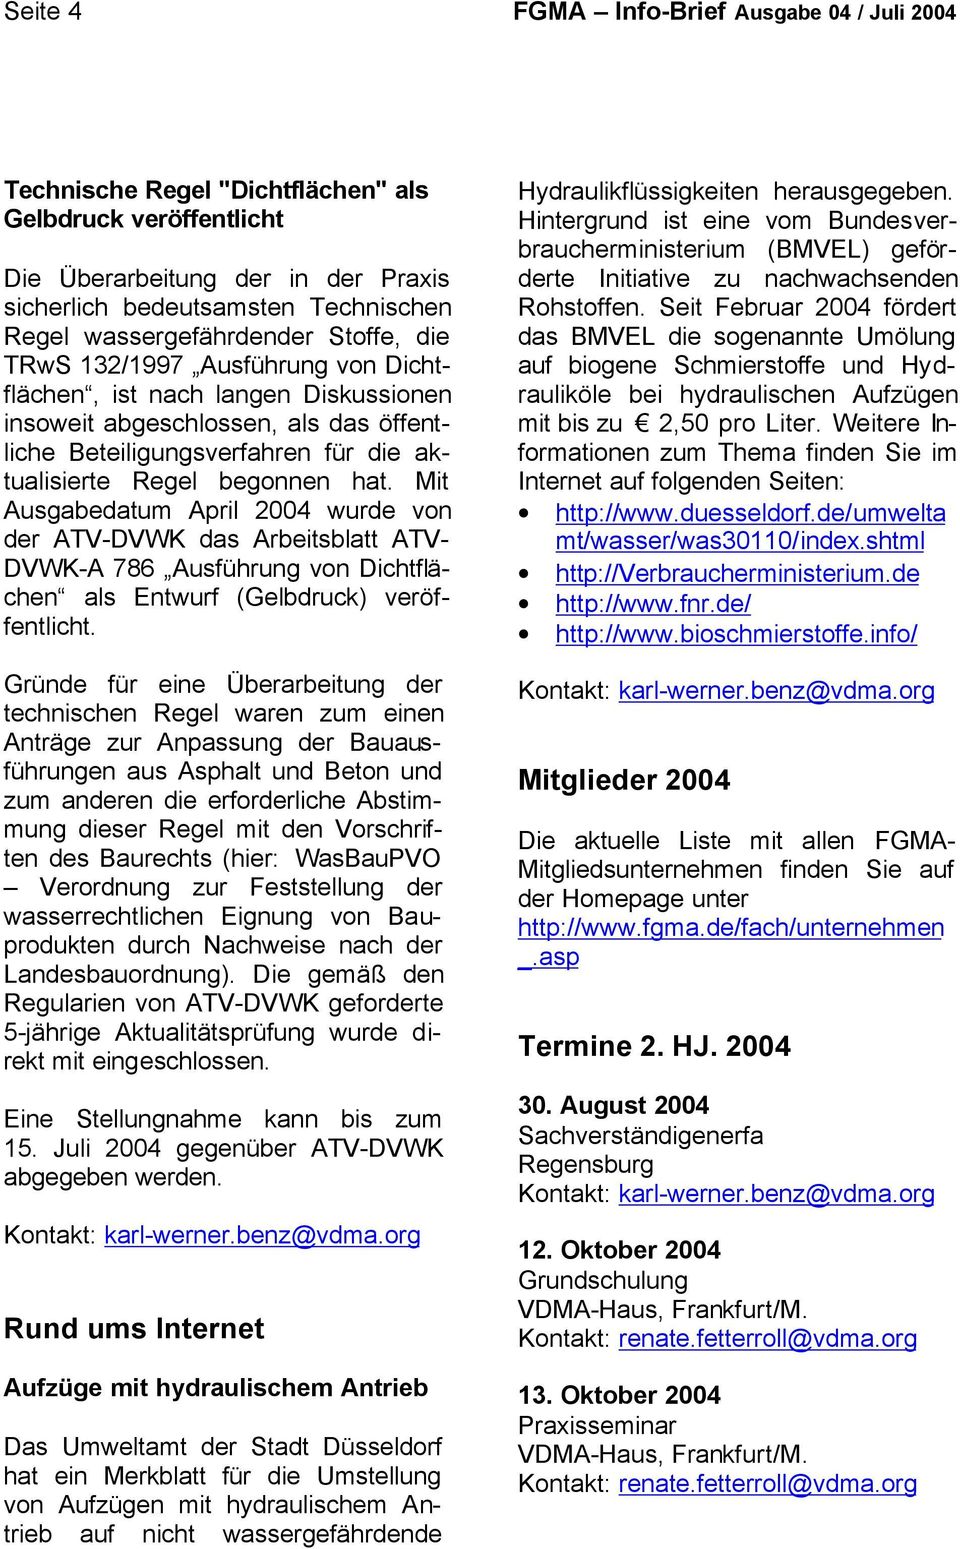 begonnen hat. Mit Ausgabedatum April 2004 wurde von der ATV-DVWK das Arbeitsblatt ATV- DVWK-A 786 Ausführung von Dichtflächen als Entwurf (Gelbdruck) veröffentlicht.